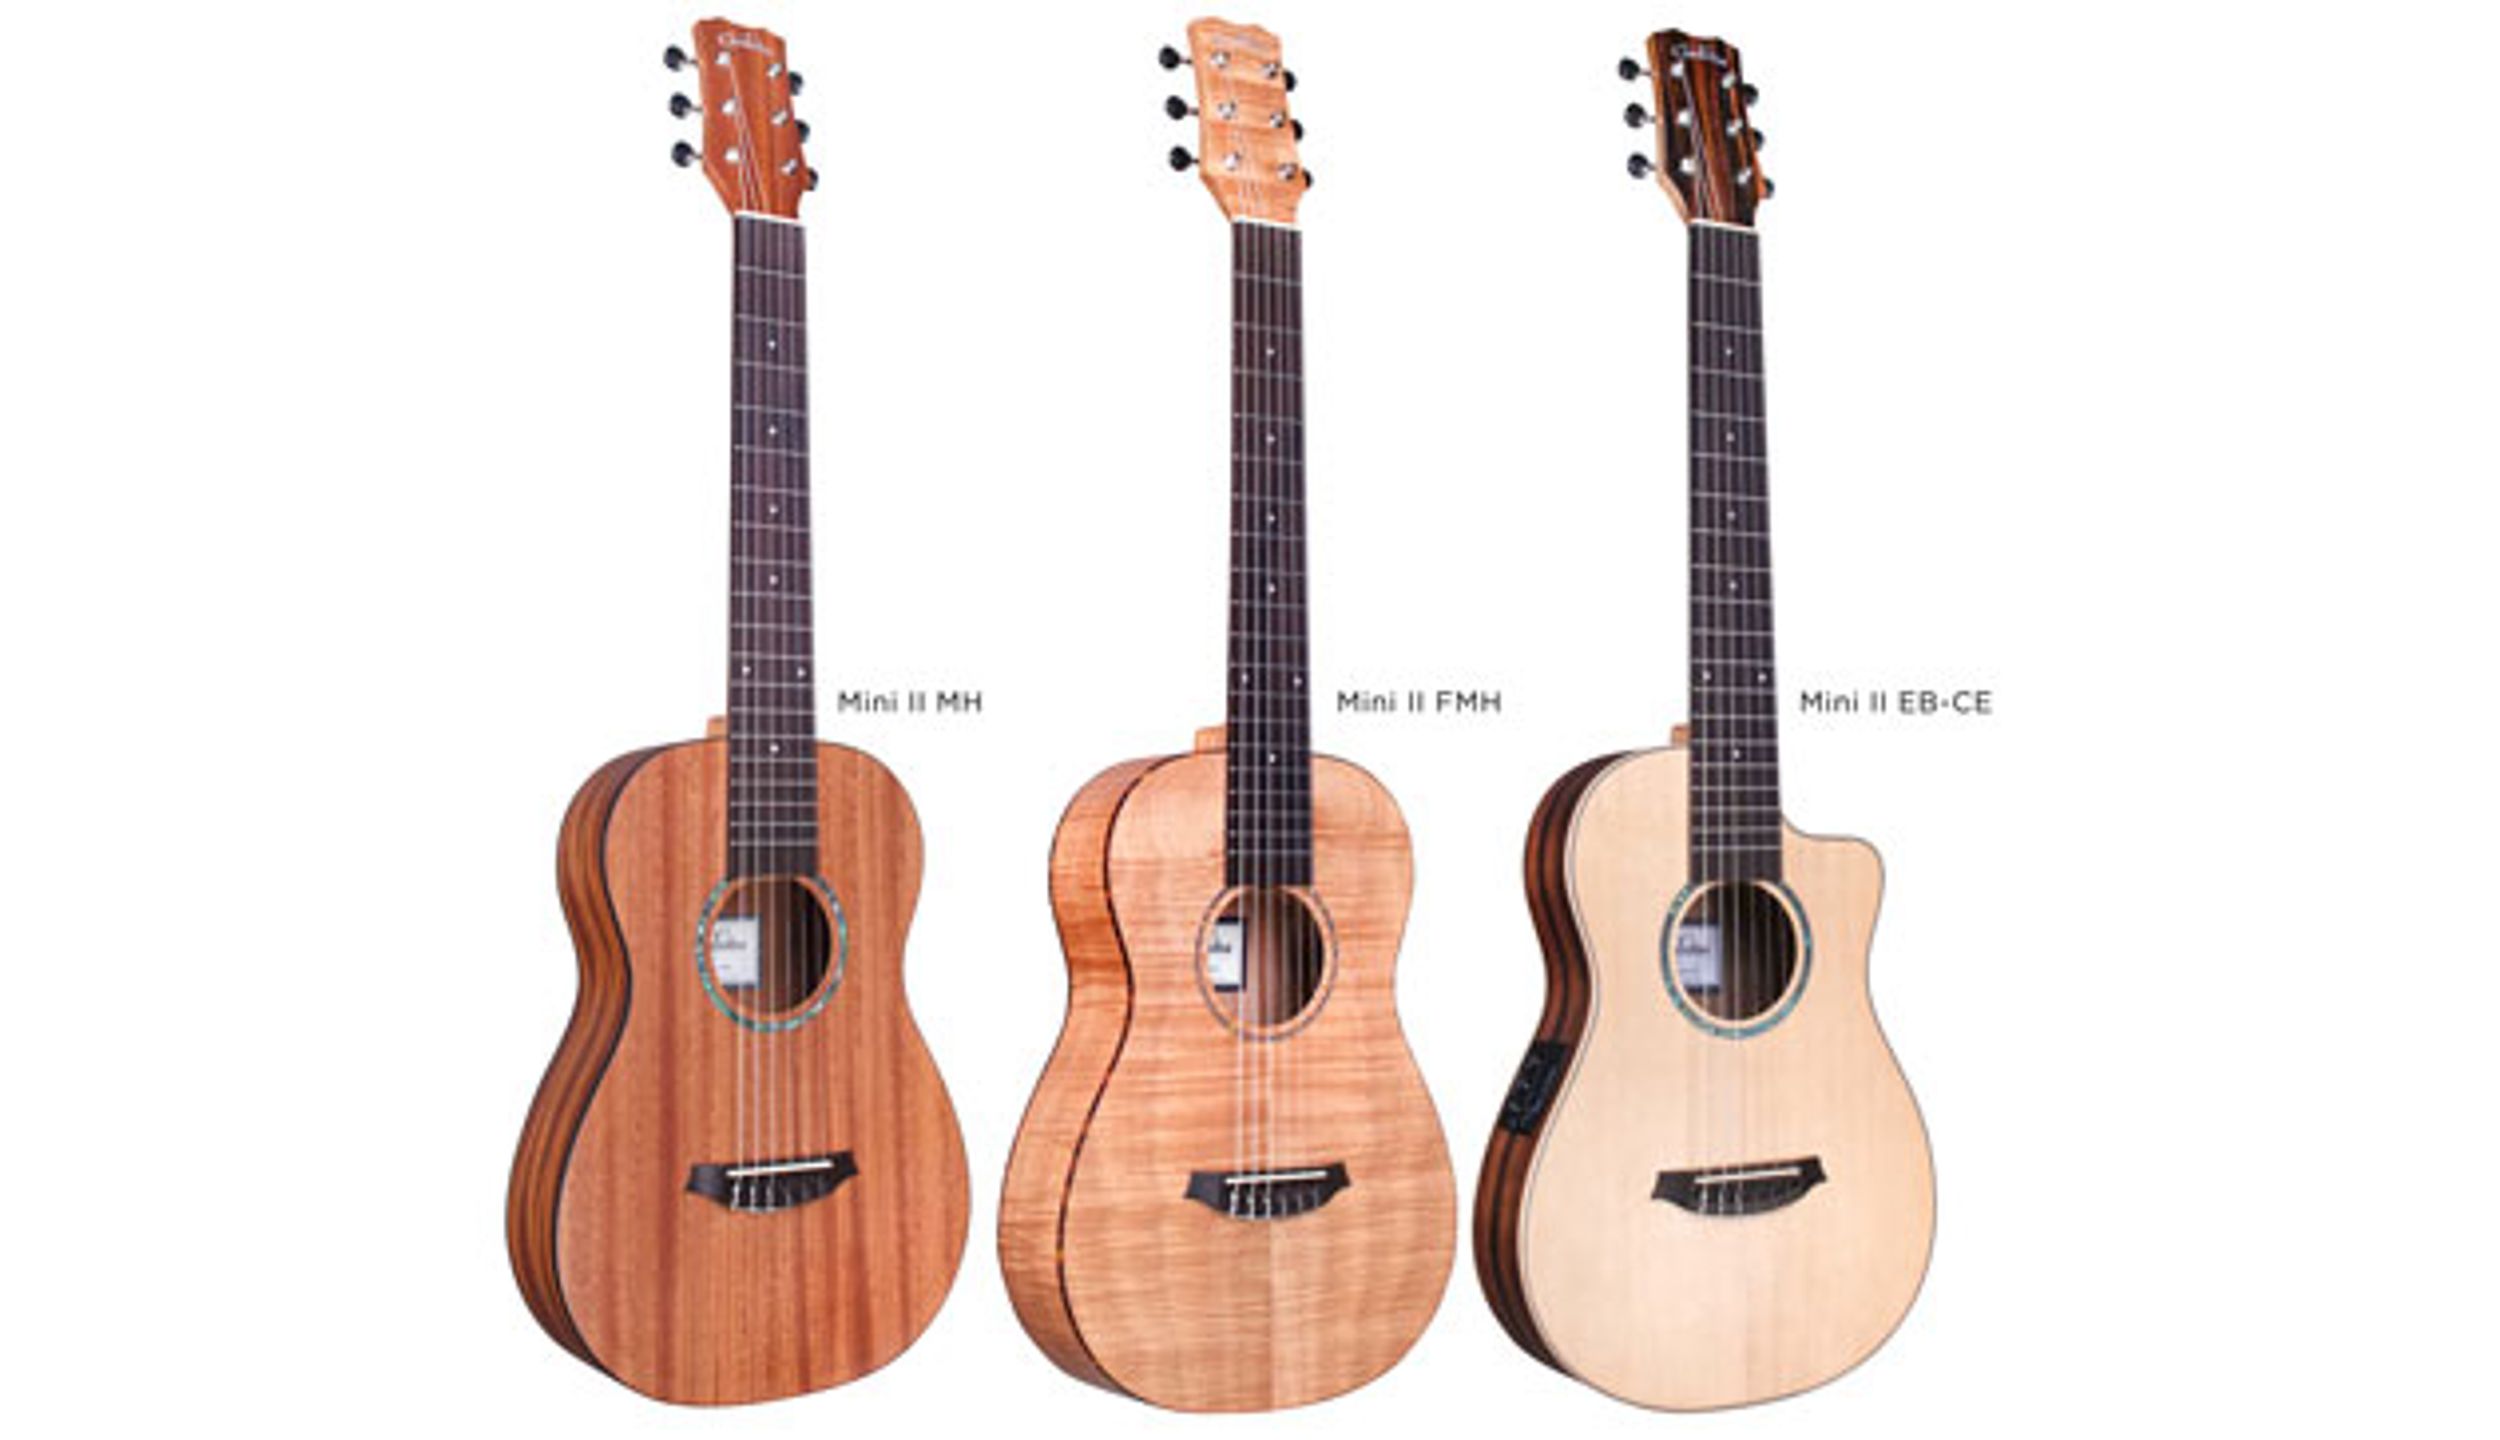 Córdoba Guitars Releases the Mini II